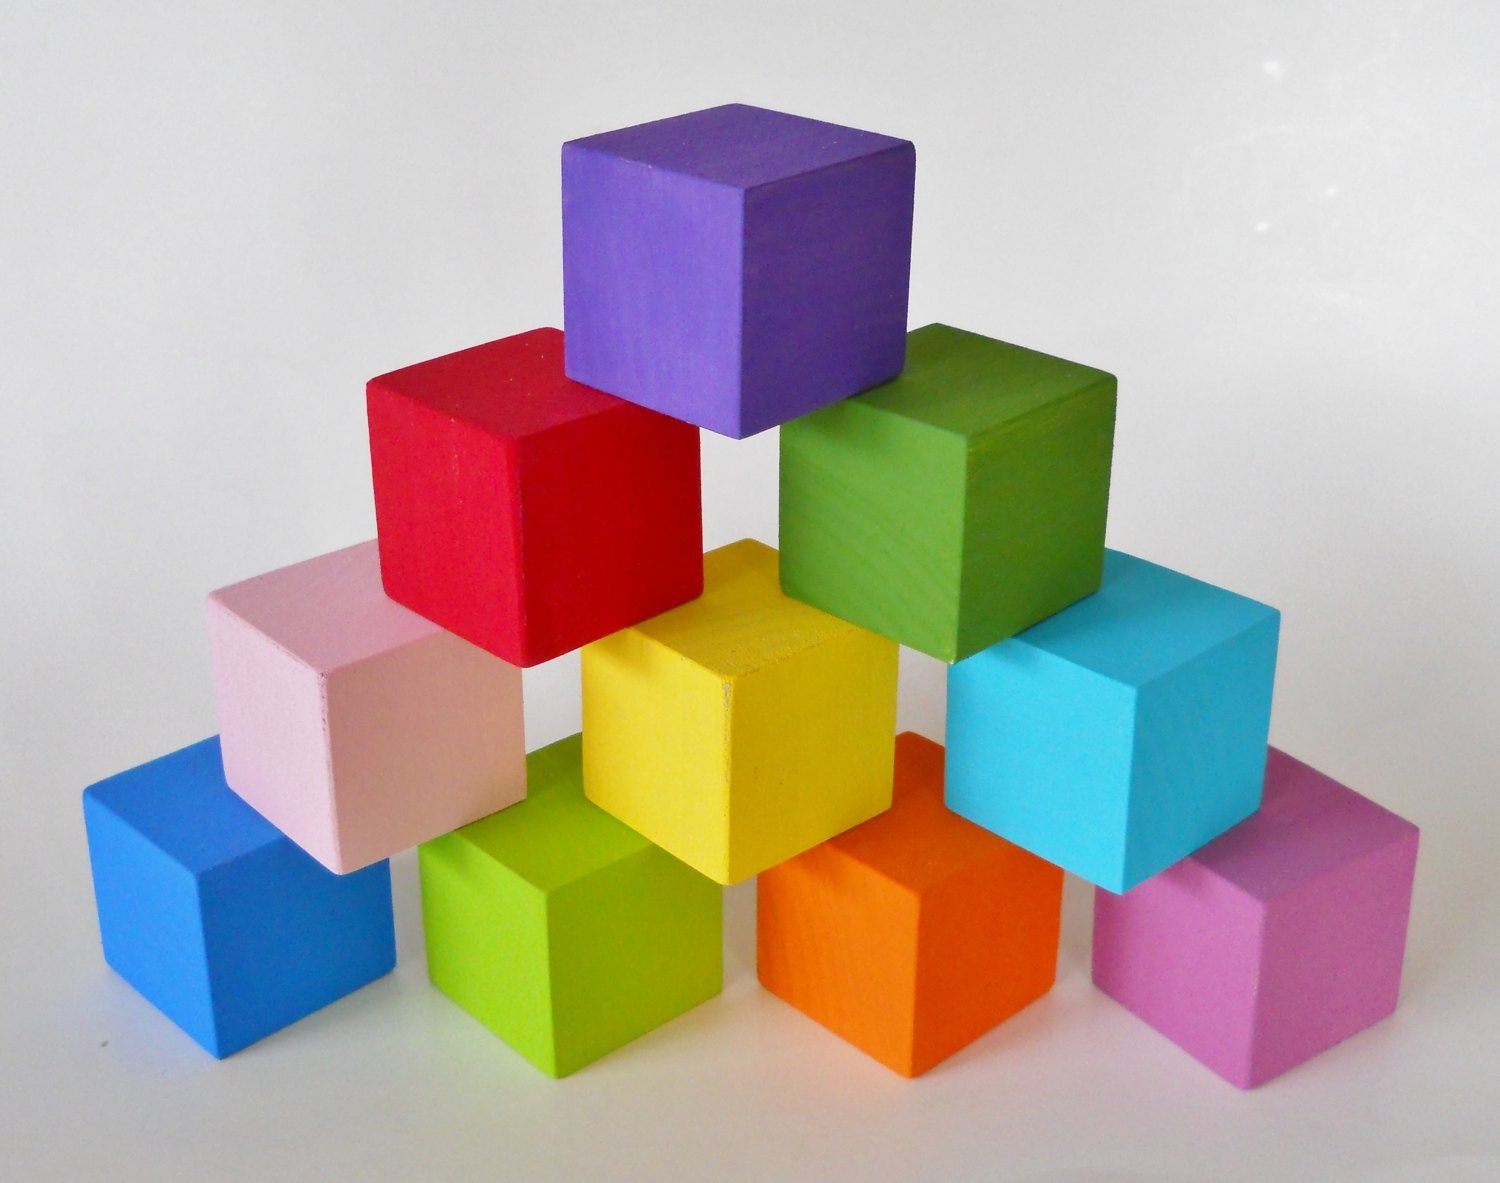 Cubes vs